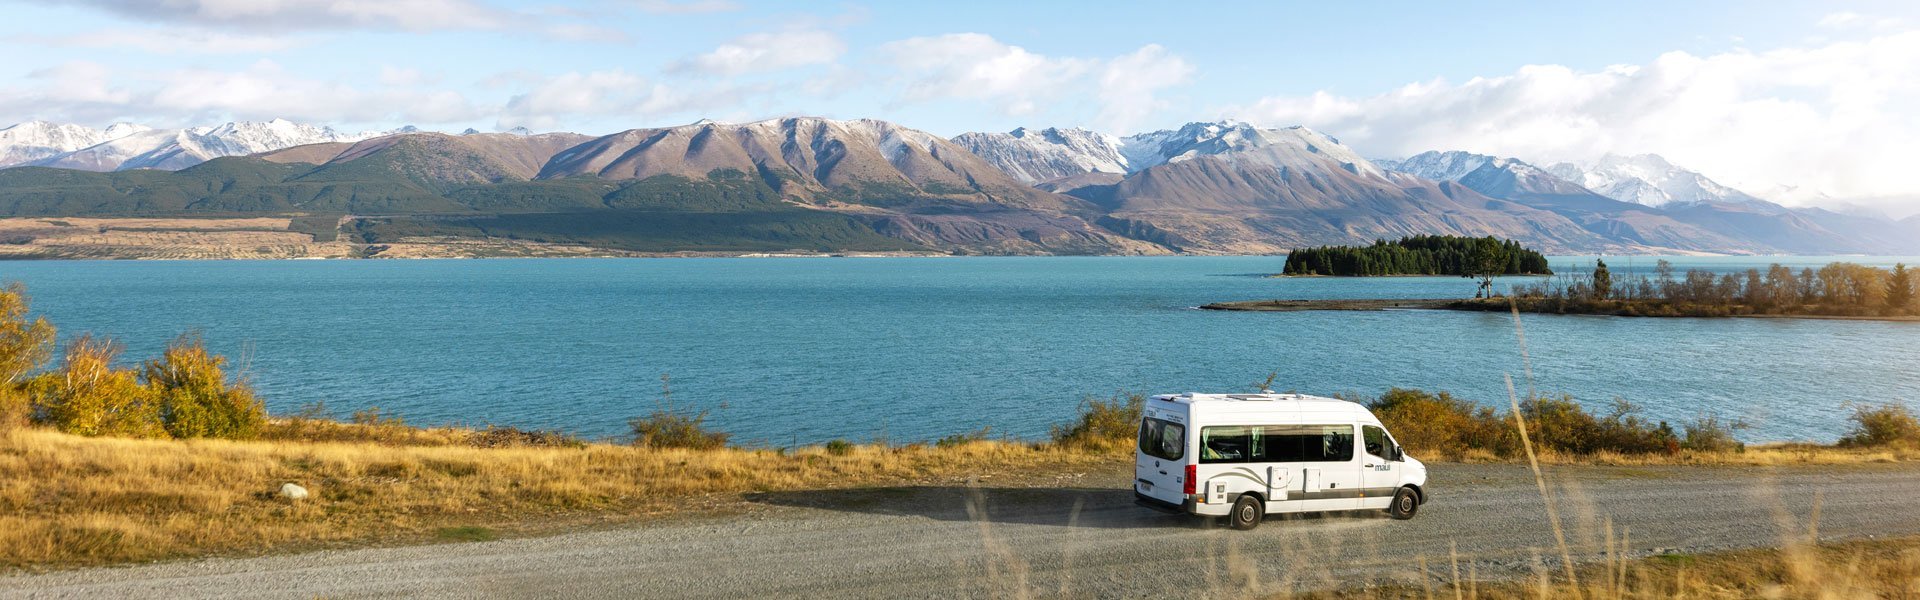 Maak een camperreis door Nieuw Zeeland met Maui 